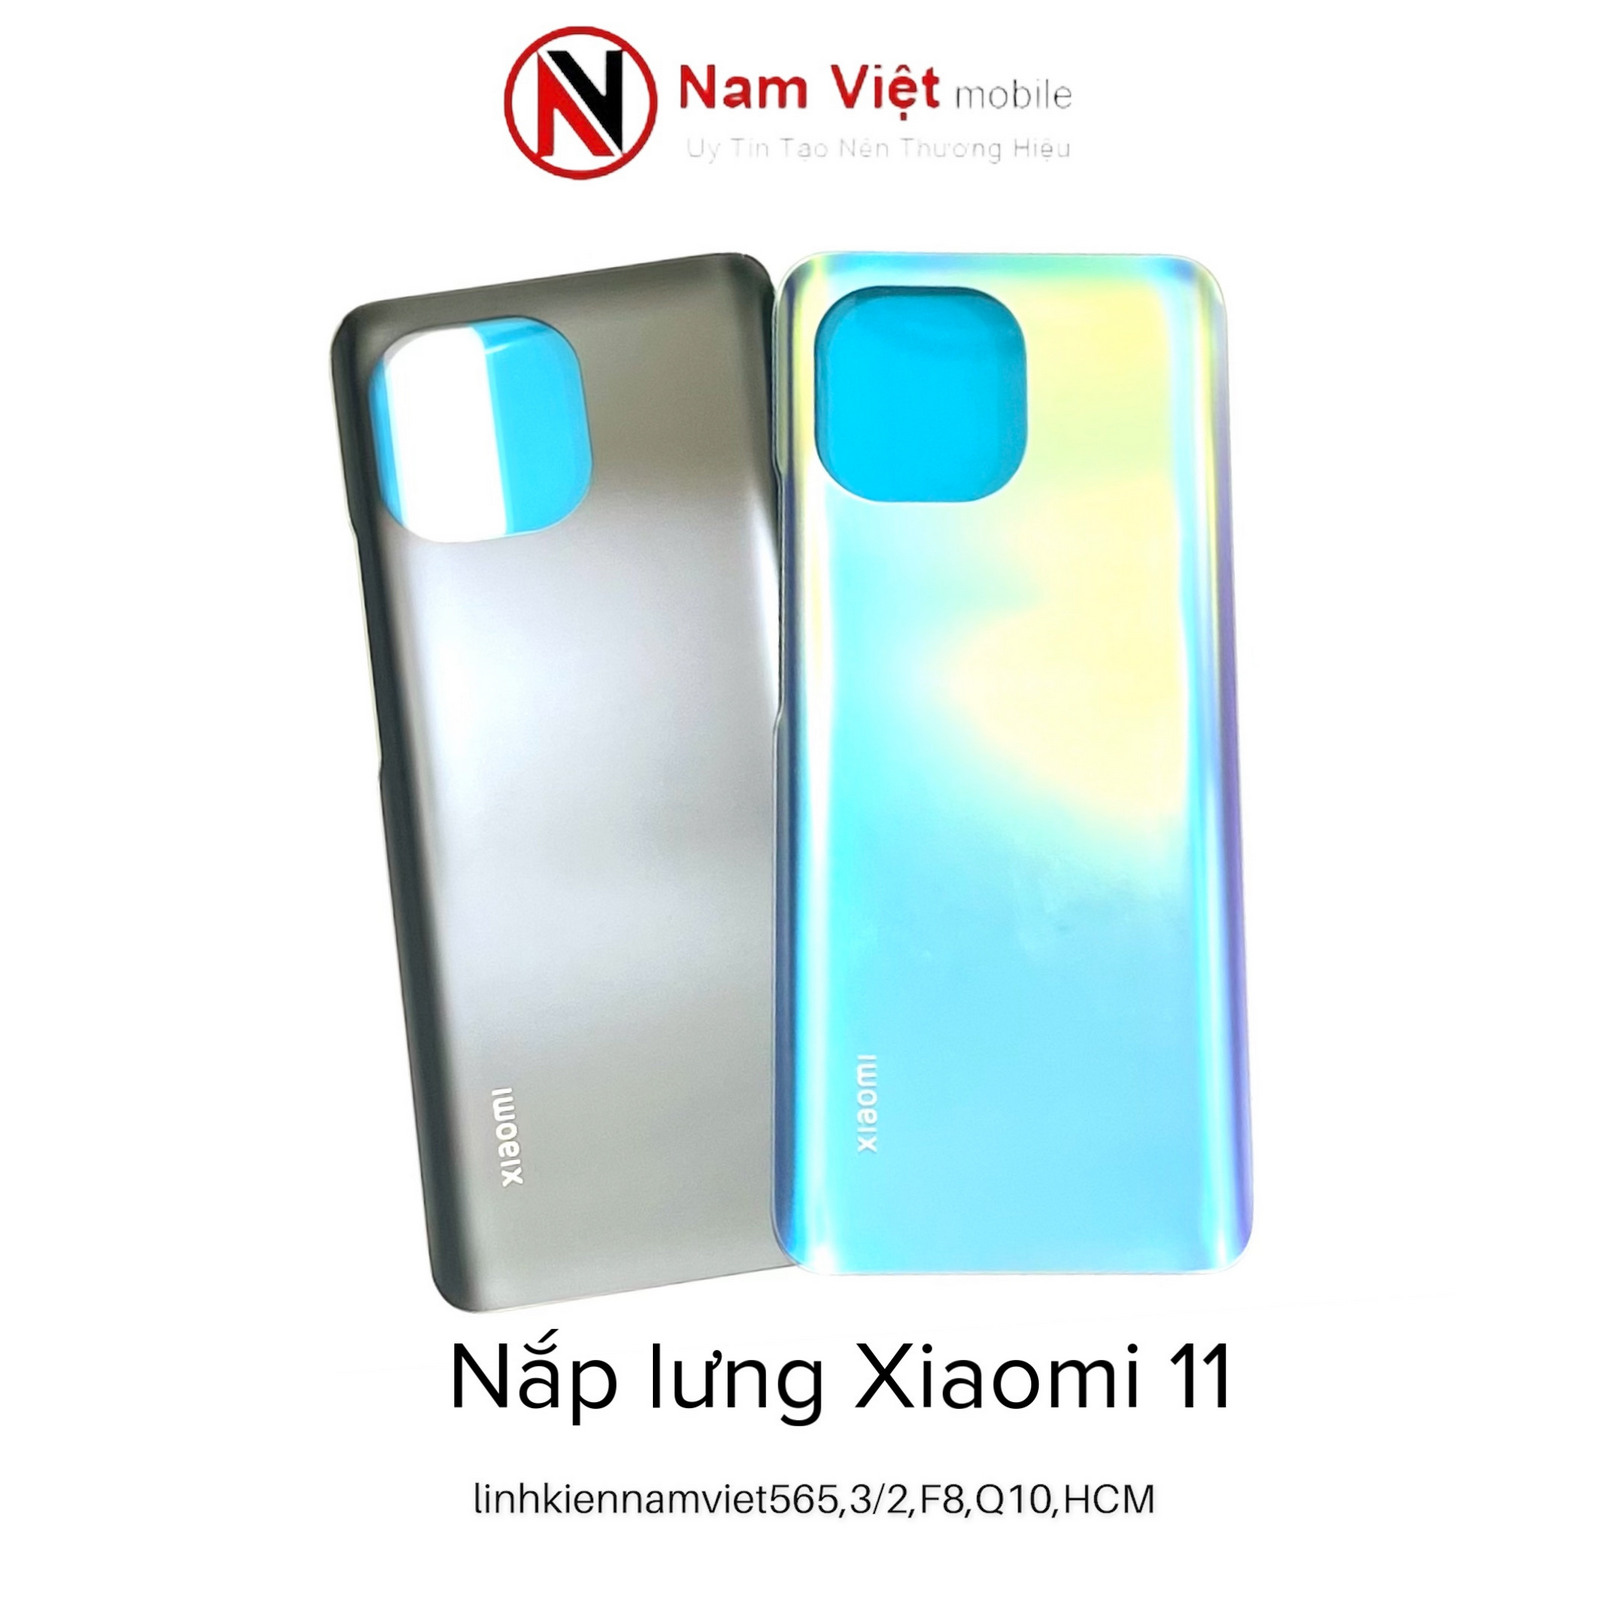 Nap-lung-Xiaomi-11